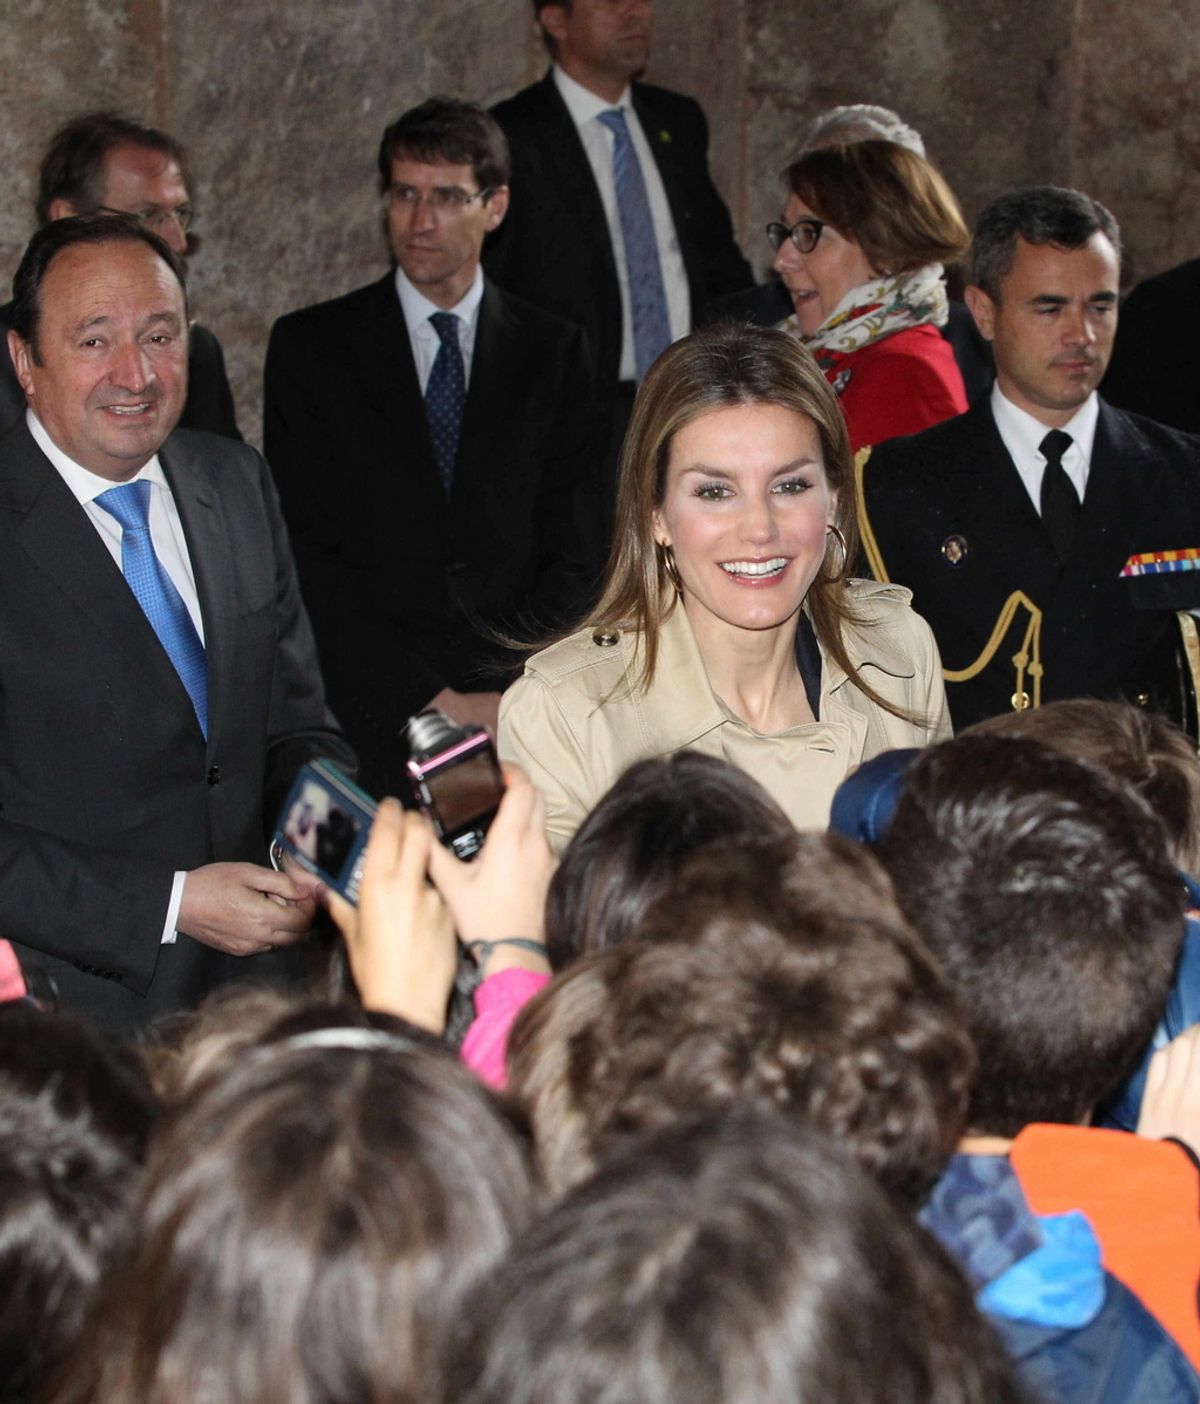 La Princesa inaugura el IX Seminario Internacional de Lengua y Periodismo